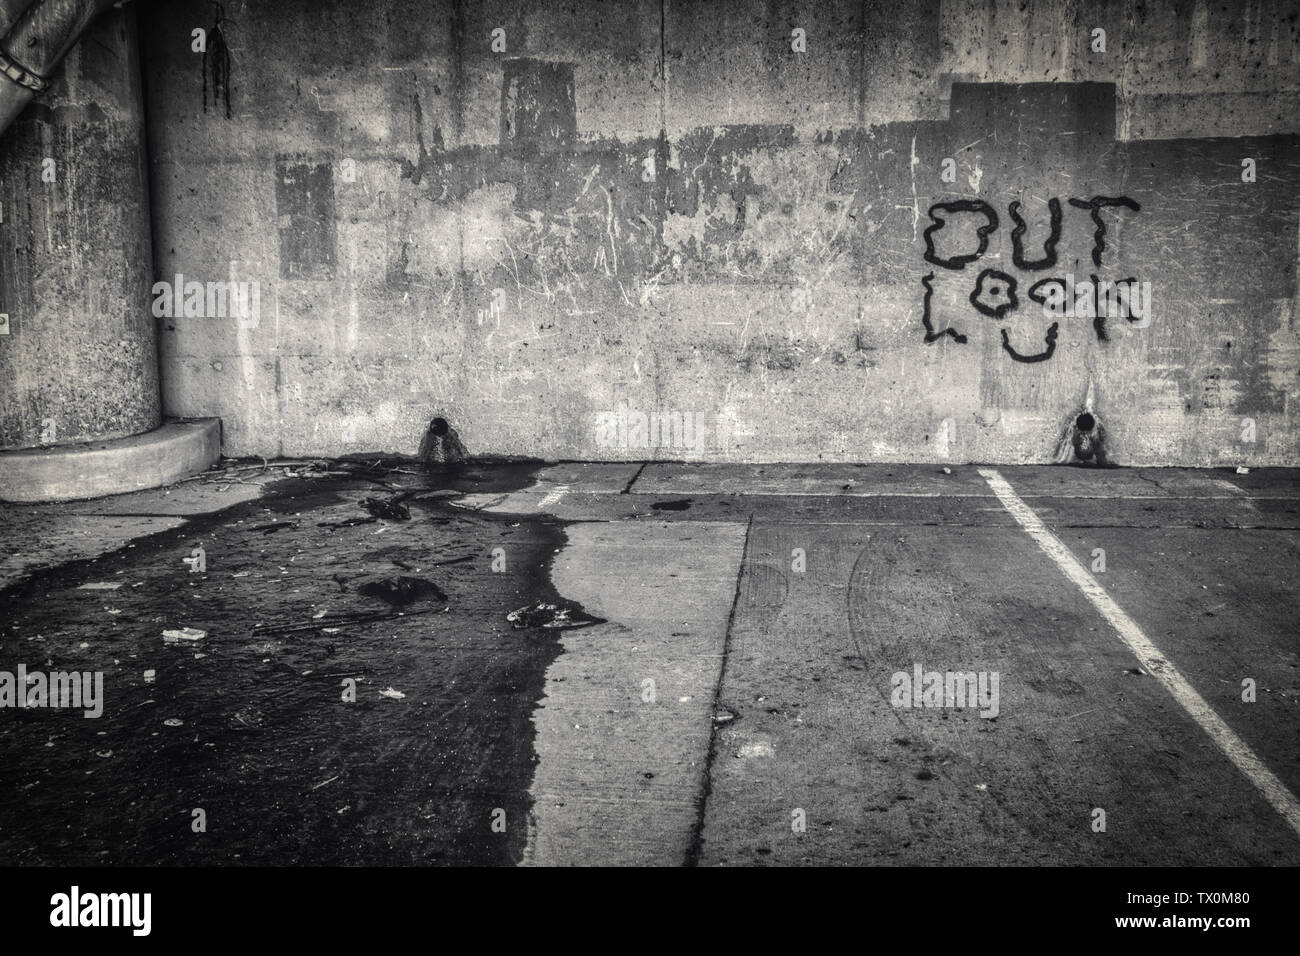 Le parole "Look Out' dipinta come graffiti su una parete di una schifezza, con una chiazza di petrolio sul terreno Foto Stock